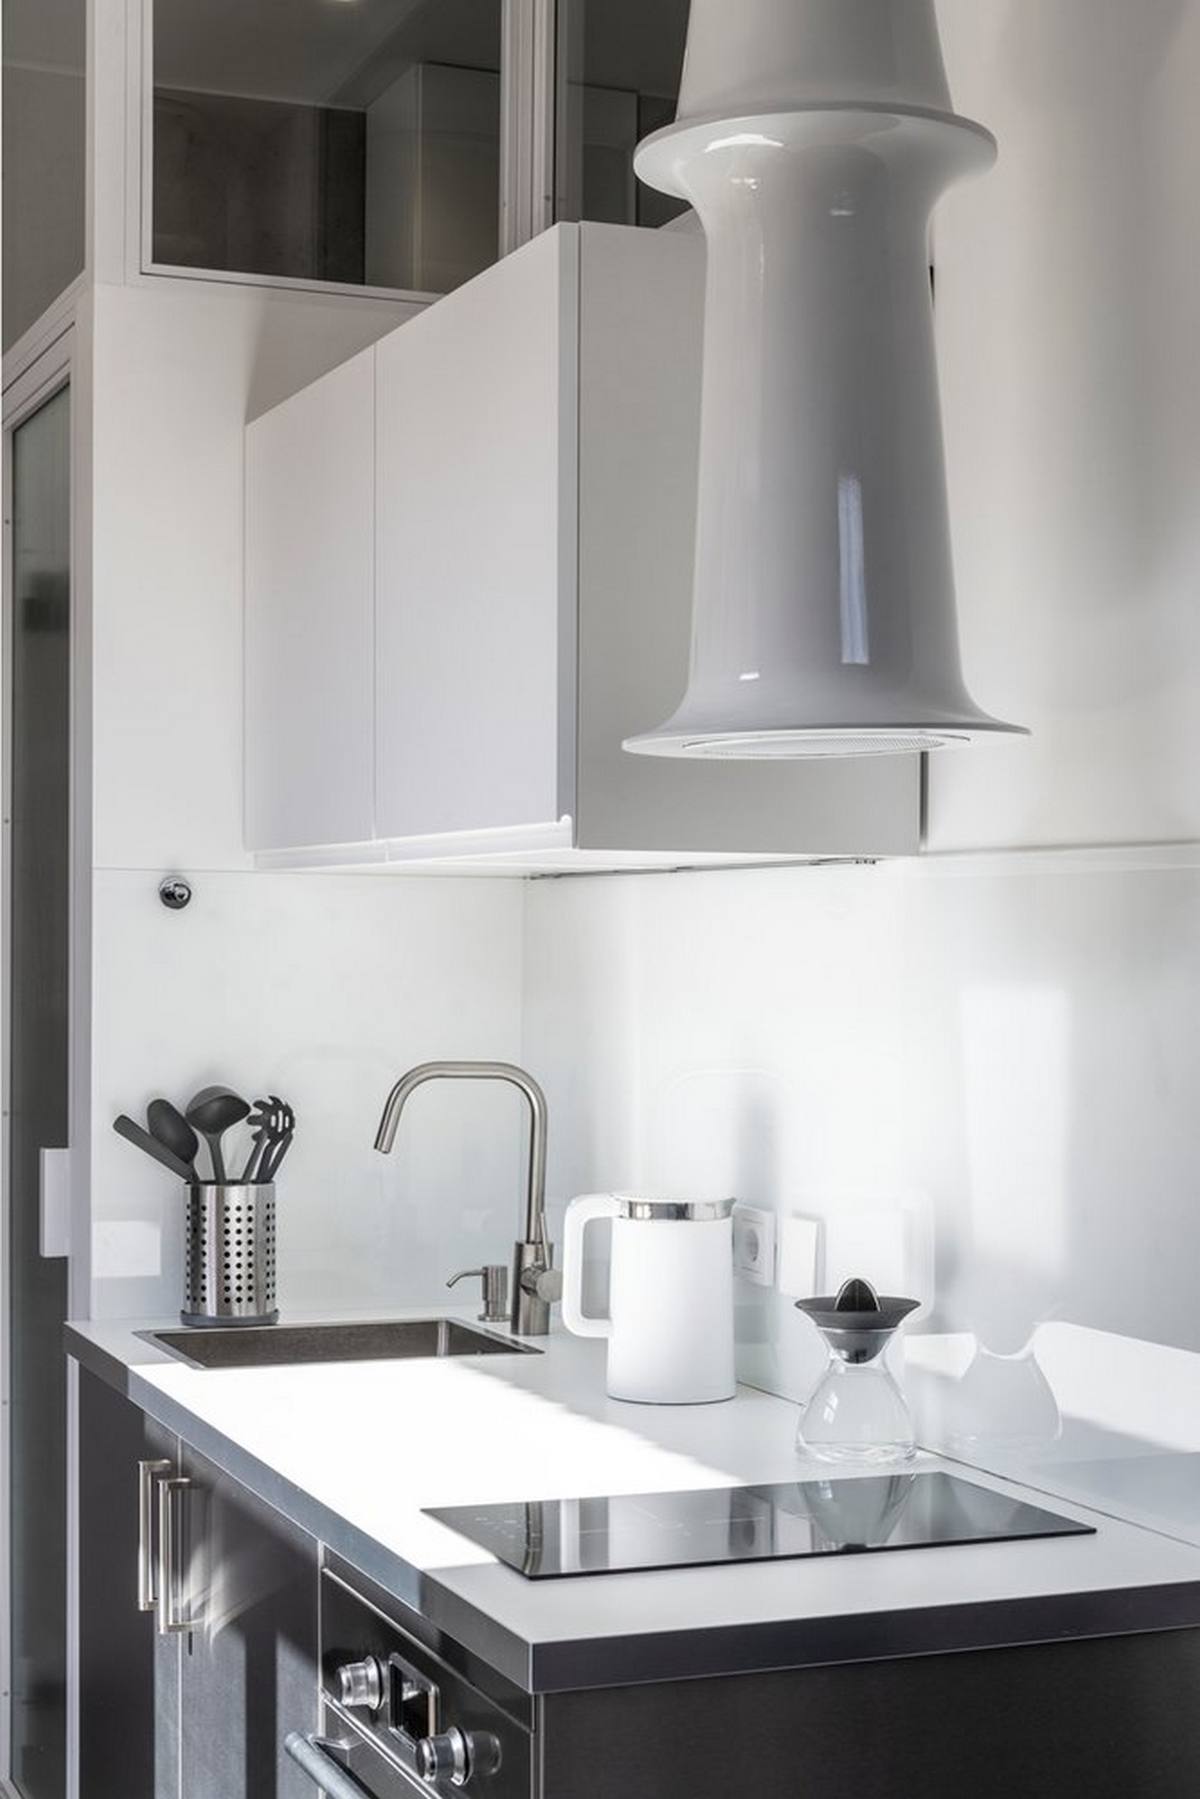 Khu vực nấu nướng với màu trắng tinh khôi, bề mặt nội thất, thiết bị, dụng cụ bếp đều có lớp hoàn thiện sáng bóng tưởng như có thể phản chiếu ánh sáng từ bên ngoài.